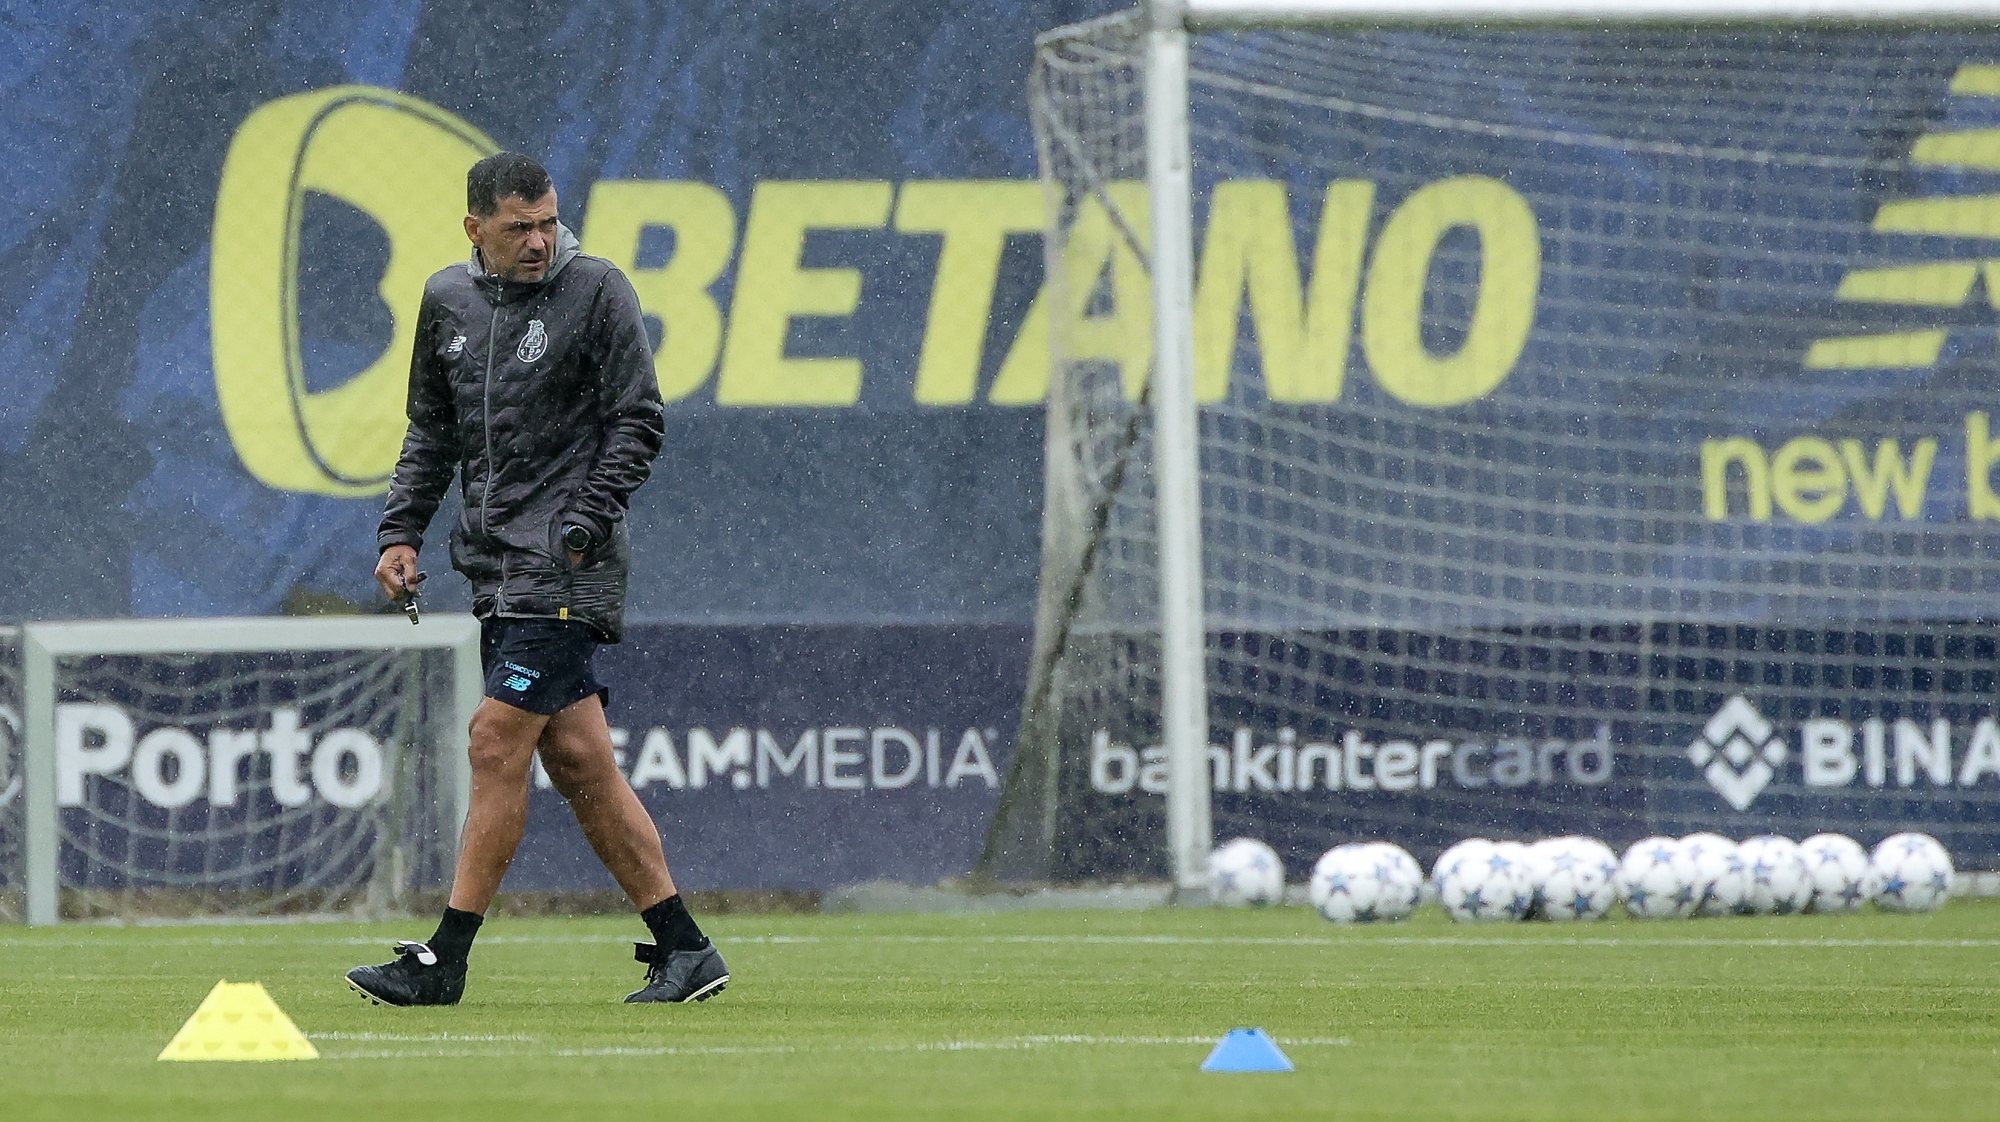 Antuérpia, adversário do FC Porto na Champions, empata em casa com o Gent  (0-0)